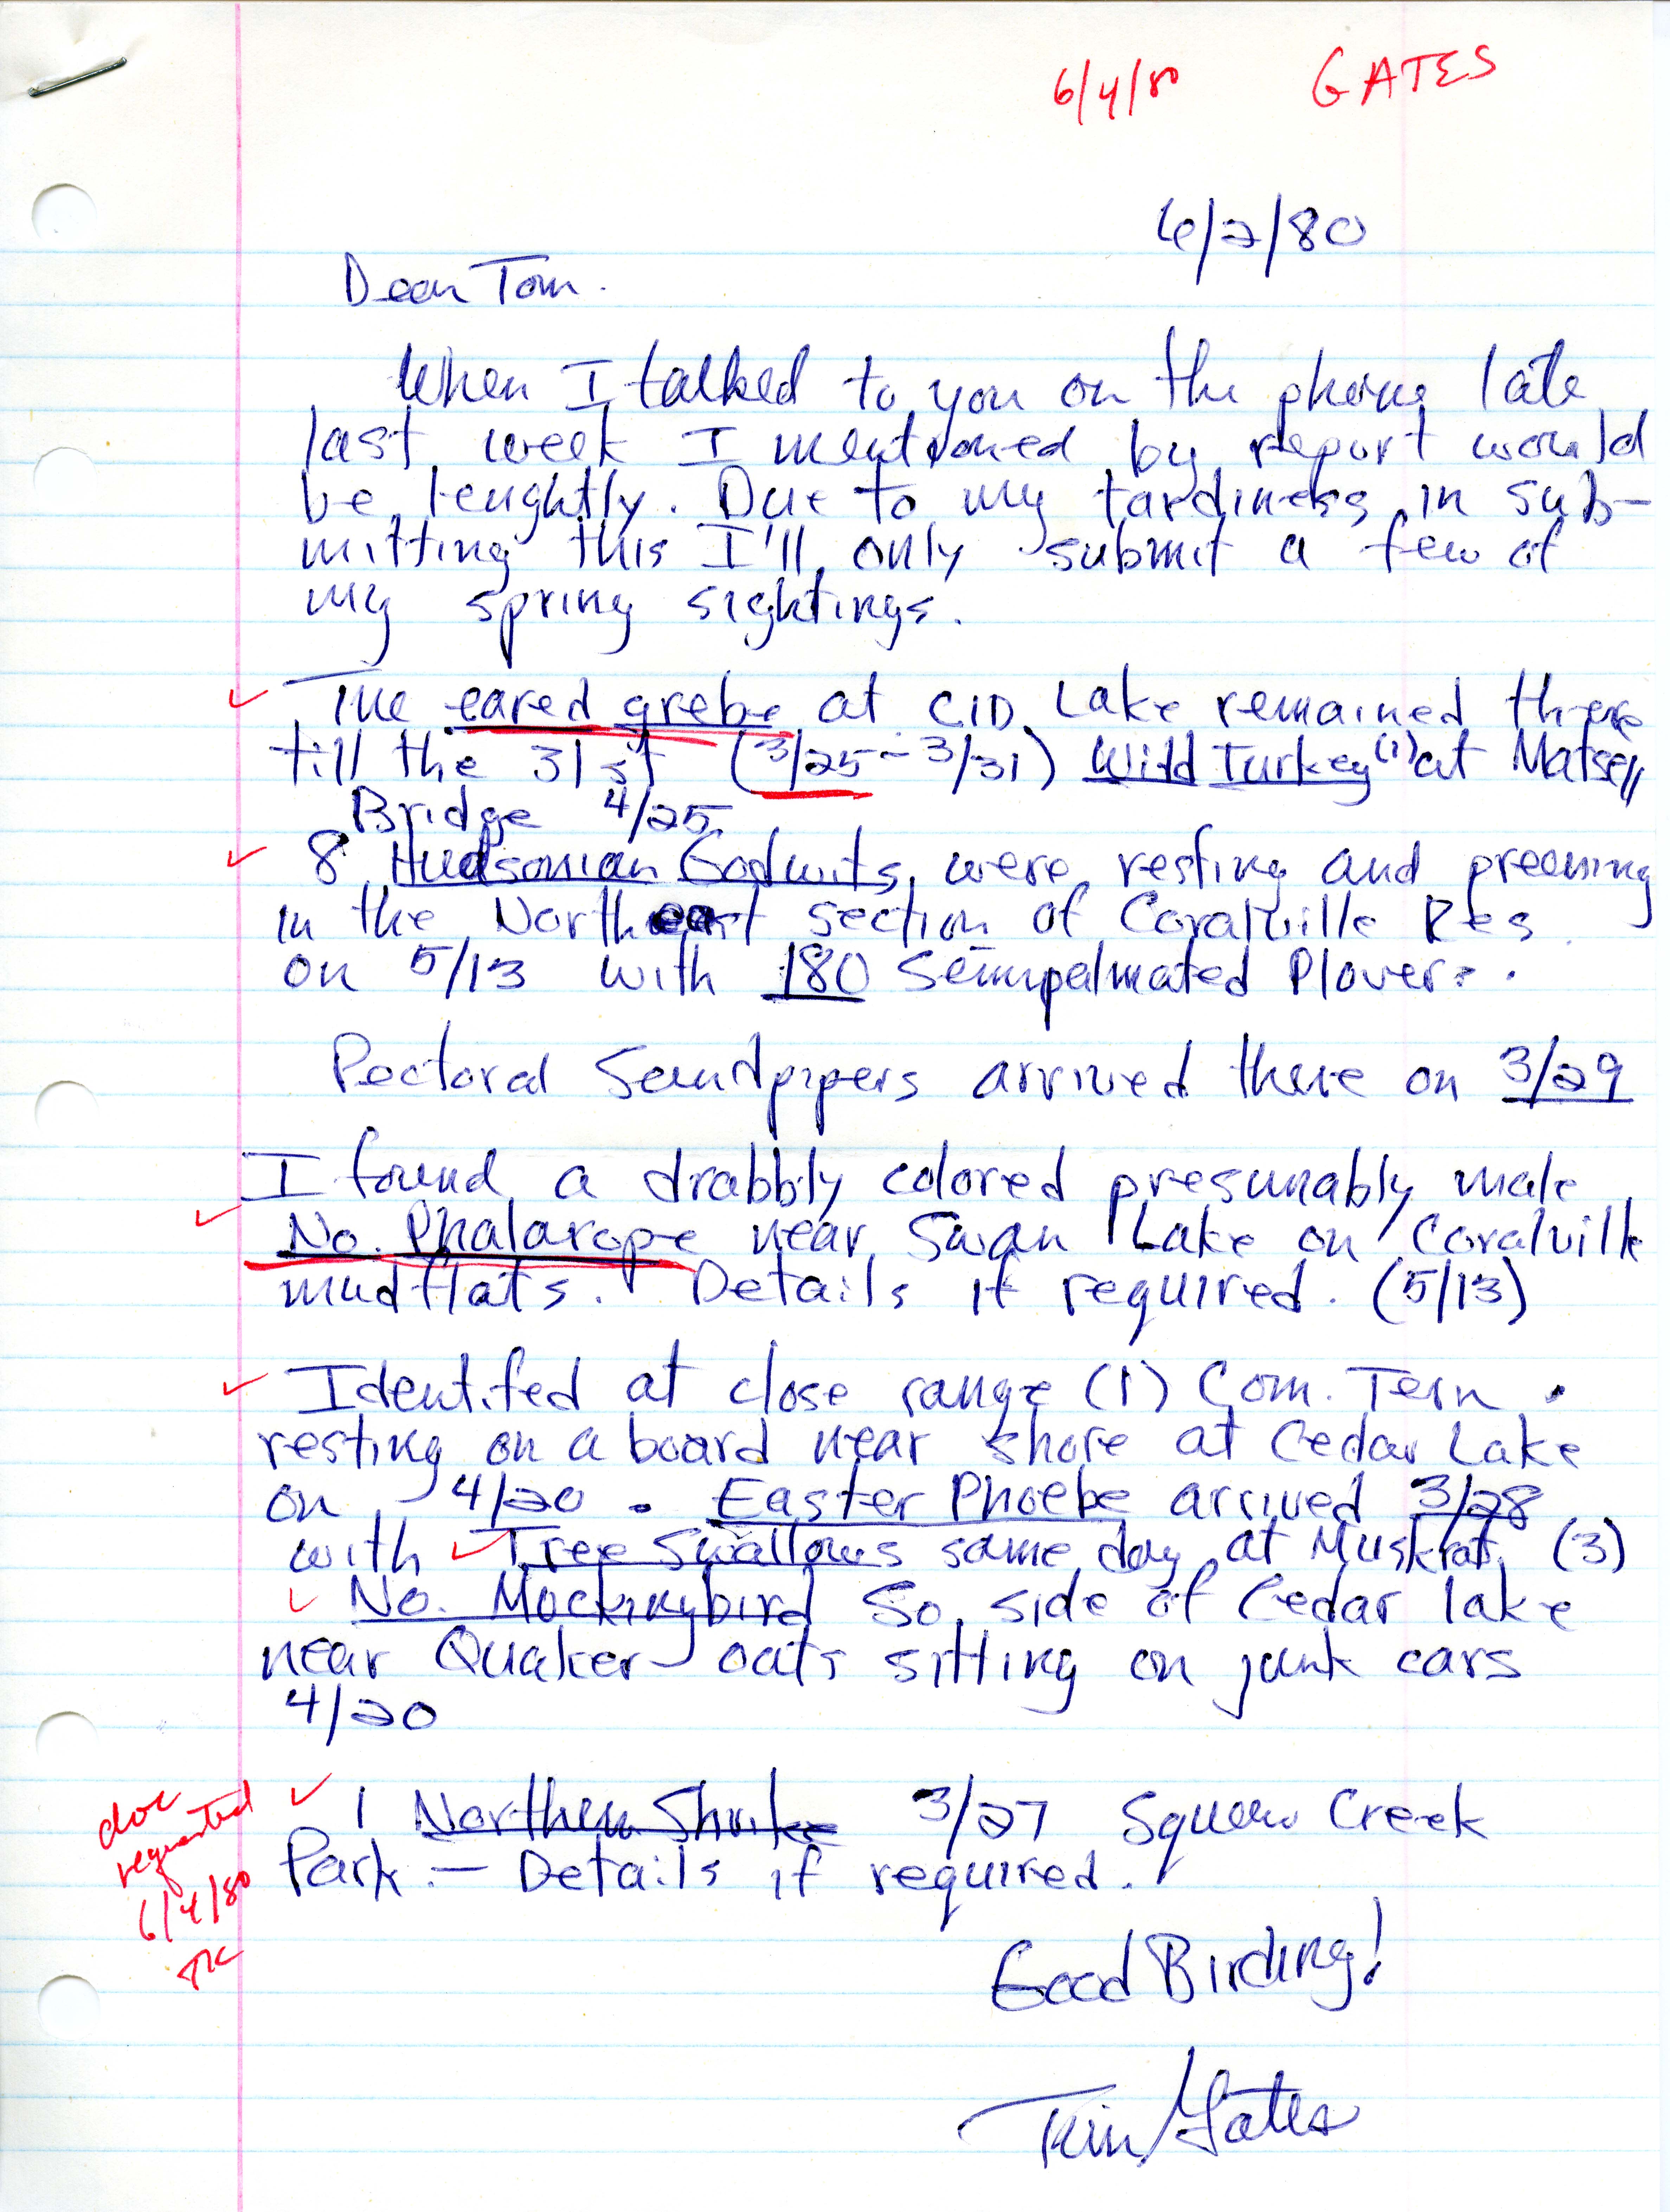 Tim Gates letter to Thomas H. Kent regarding bird sightings, June 2, 1980